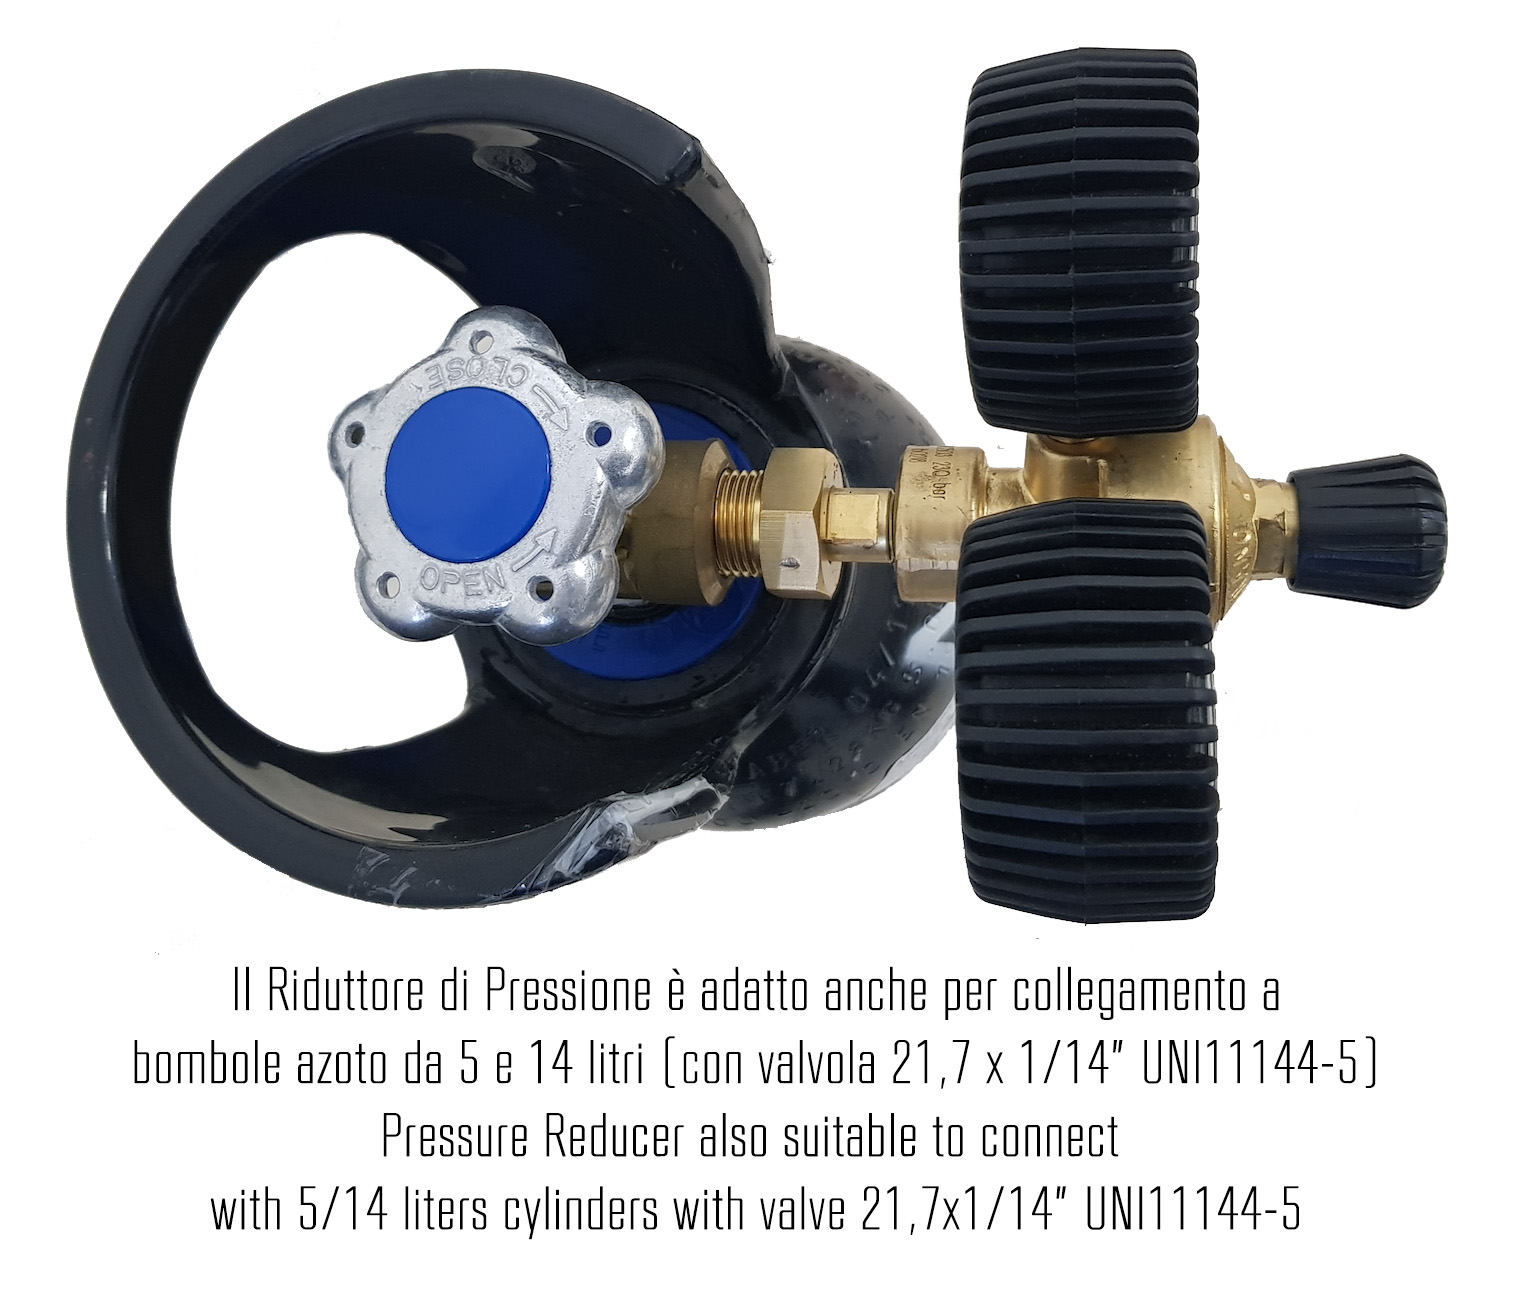 K-Leak Tester N2 AUTO - Kit cercafughe azoto per impianti condizionamento auto (adatto anche per collegamento a bombole industriali) - Foto 4